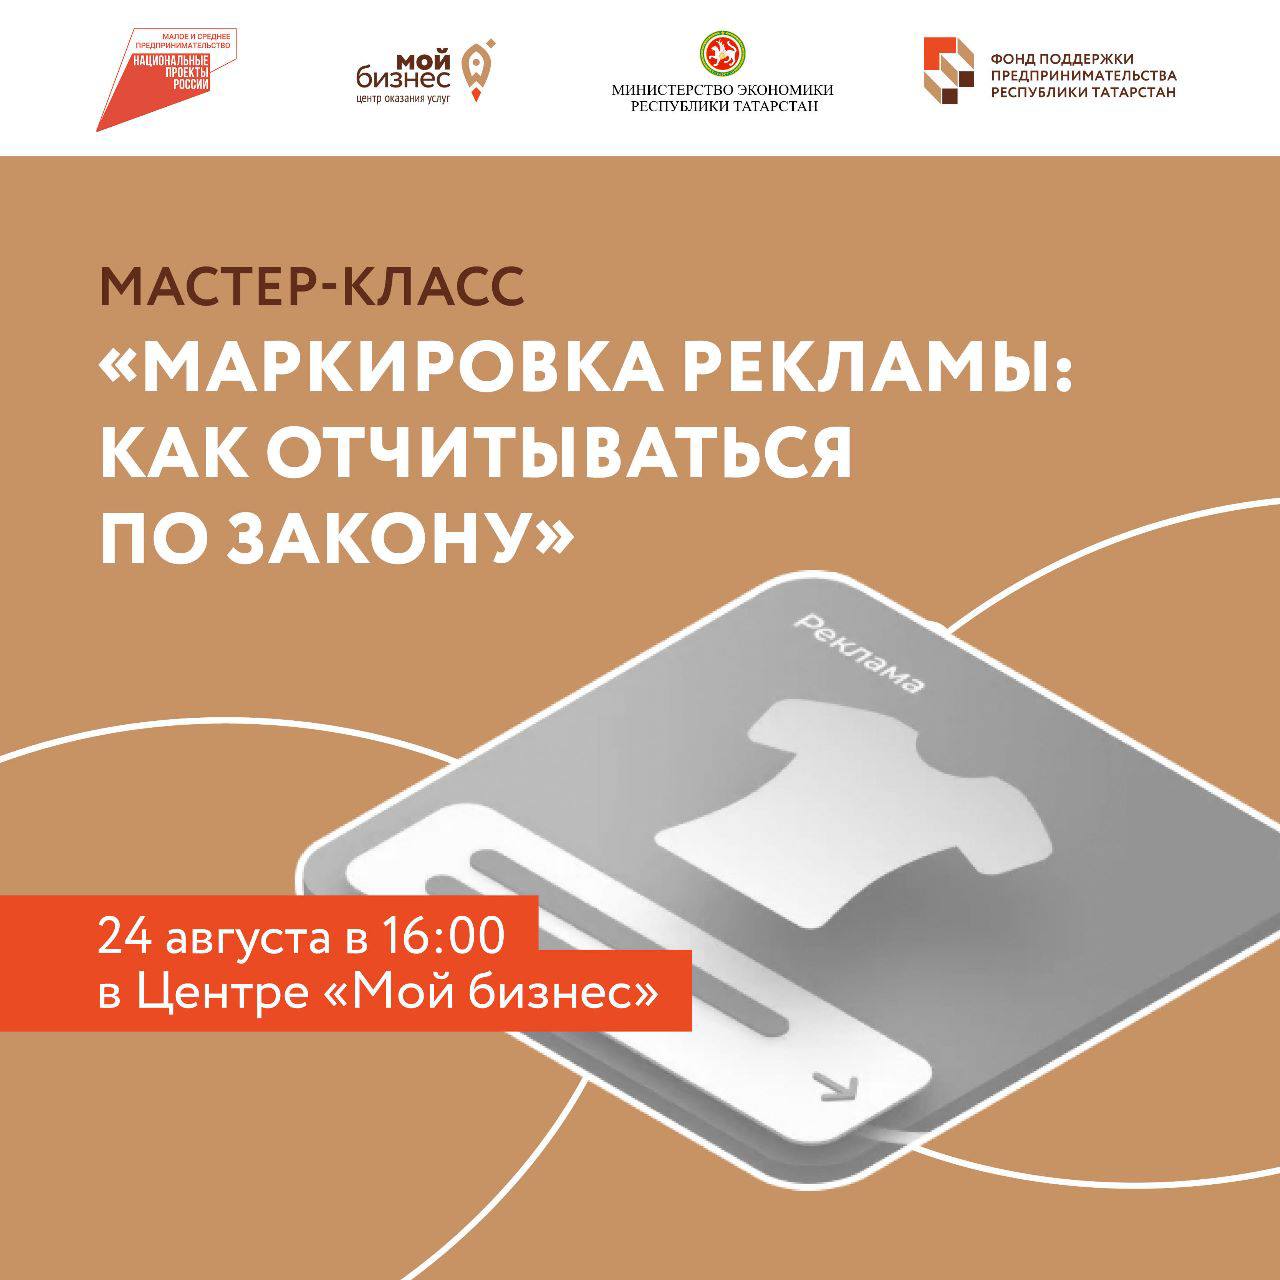 С 1 сентября вступает закон о штрафах до 700 тысяч рублей за отсутствие маркировки рекламы в интернете.